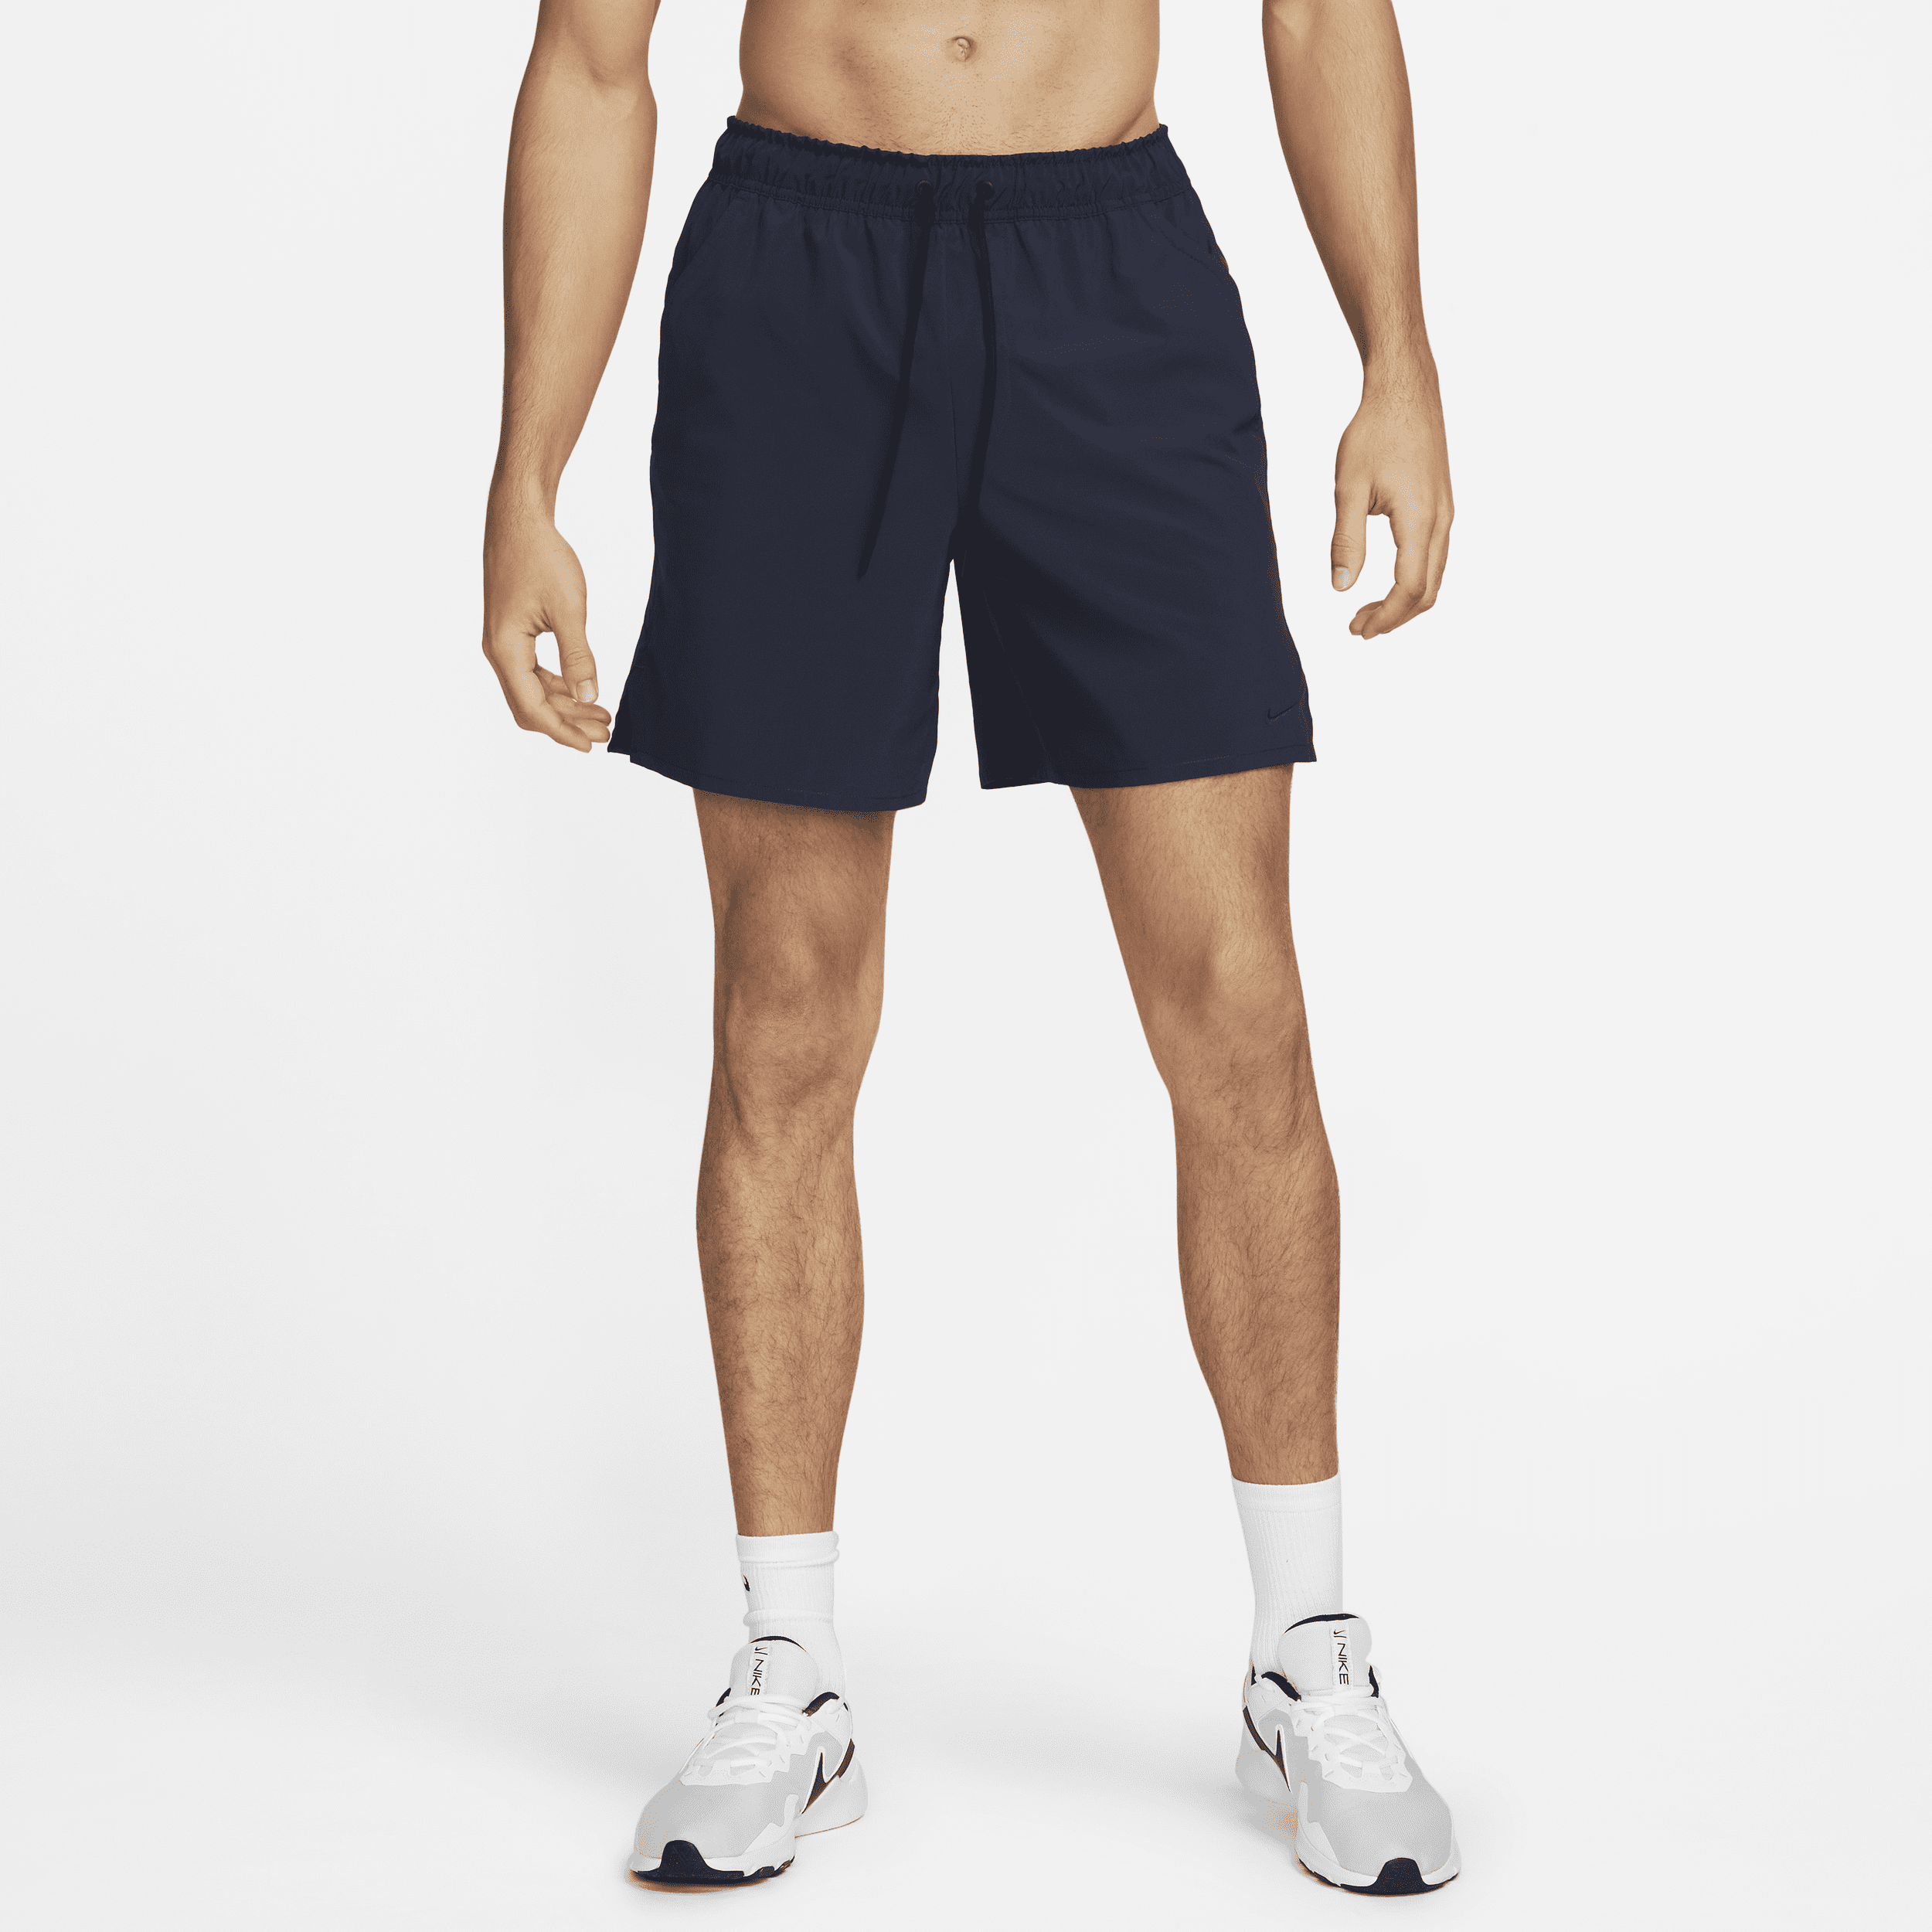 Alsidige Nike Unlimited-Dri-FIT-shorts (18 cm) uden for til mænd - blå